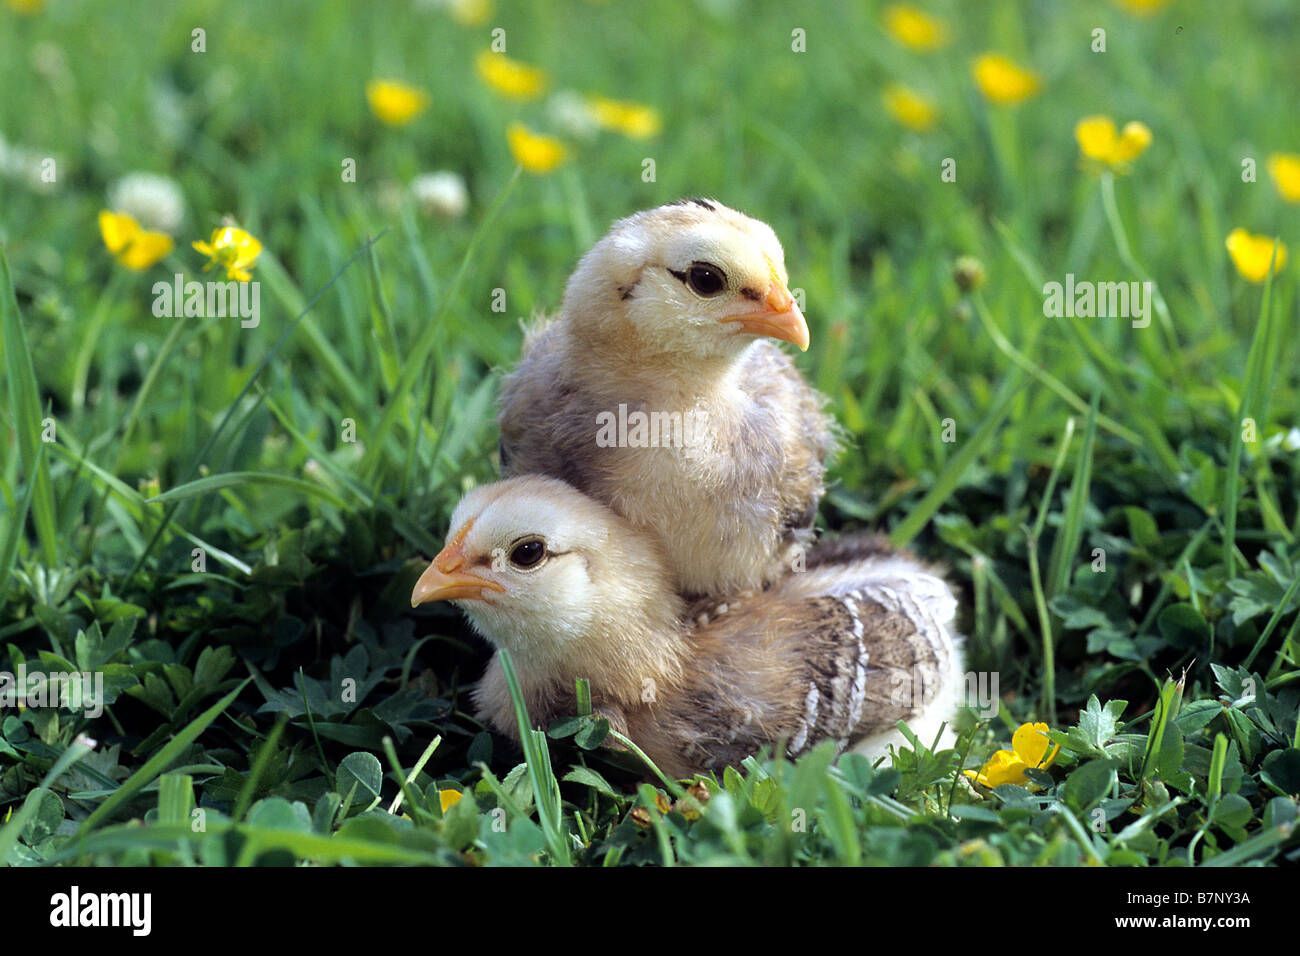 Domestic Chicken (Gallus gallus domesticus), breed: Araucana or Araucans, chicks Stock Photo